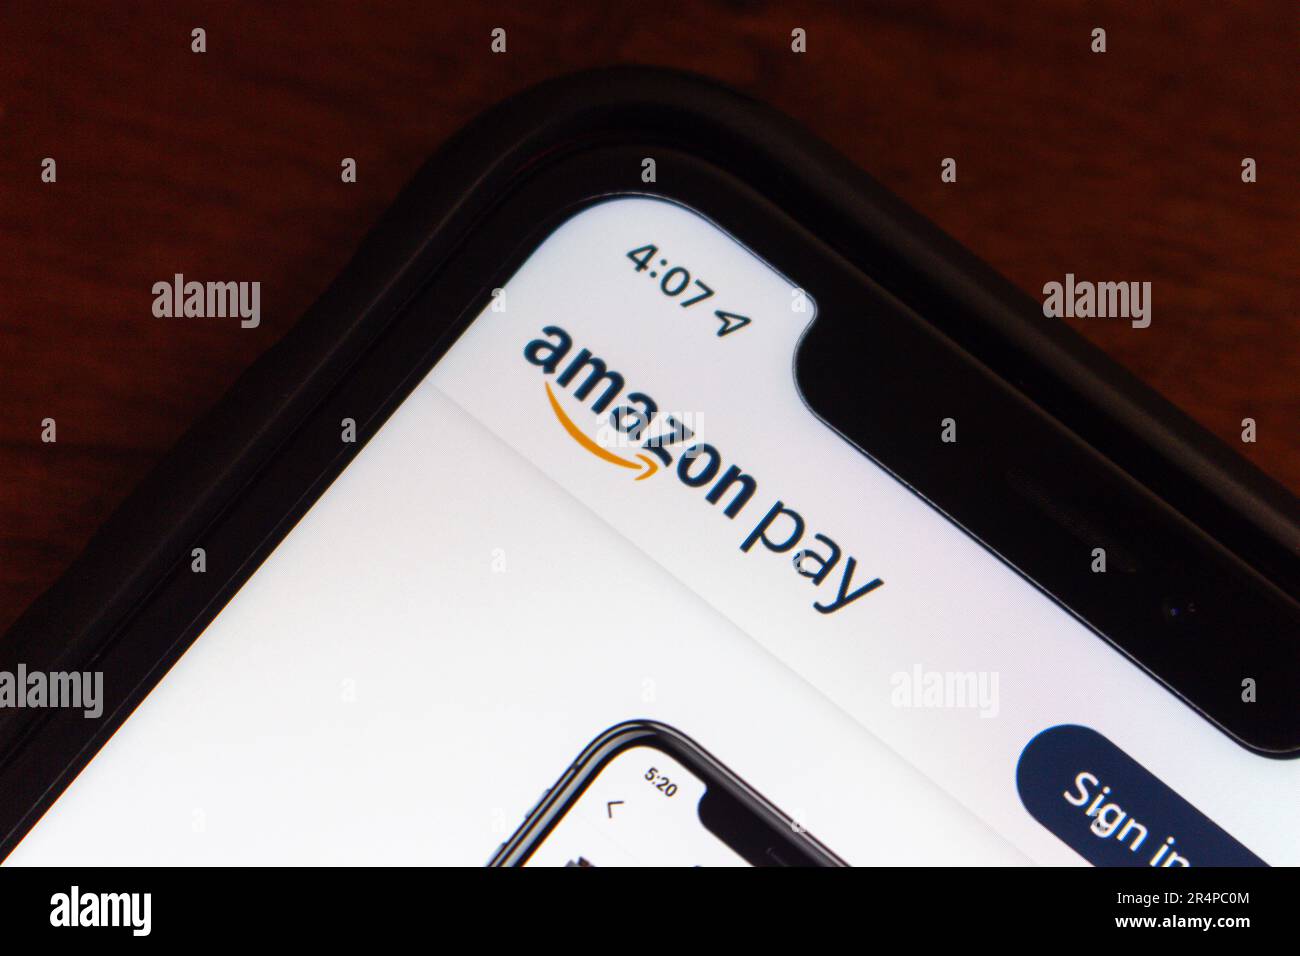 Logo Amazon Pay affiché sur son site Web sur un écran d'iPhone. Amazon Pay est un service de paiement en ligne détenu par Amazon pour divers sites d'achat associés. Banque D'Images